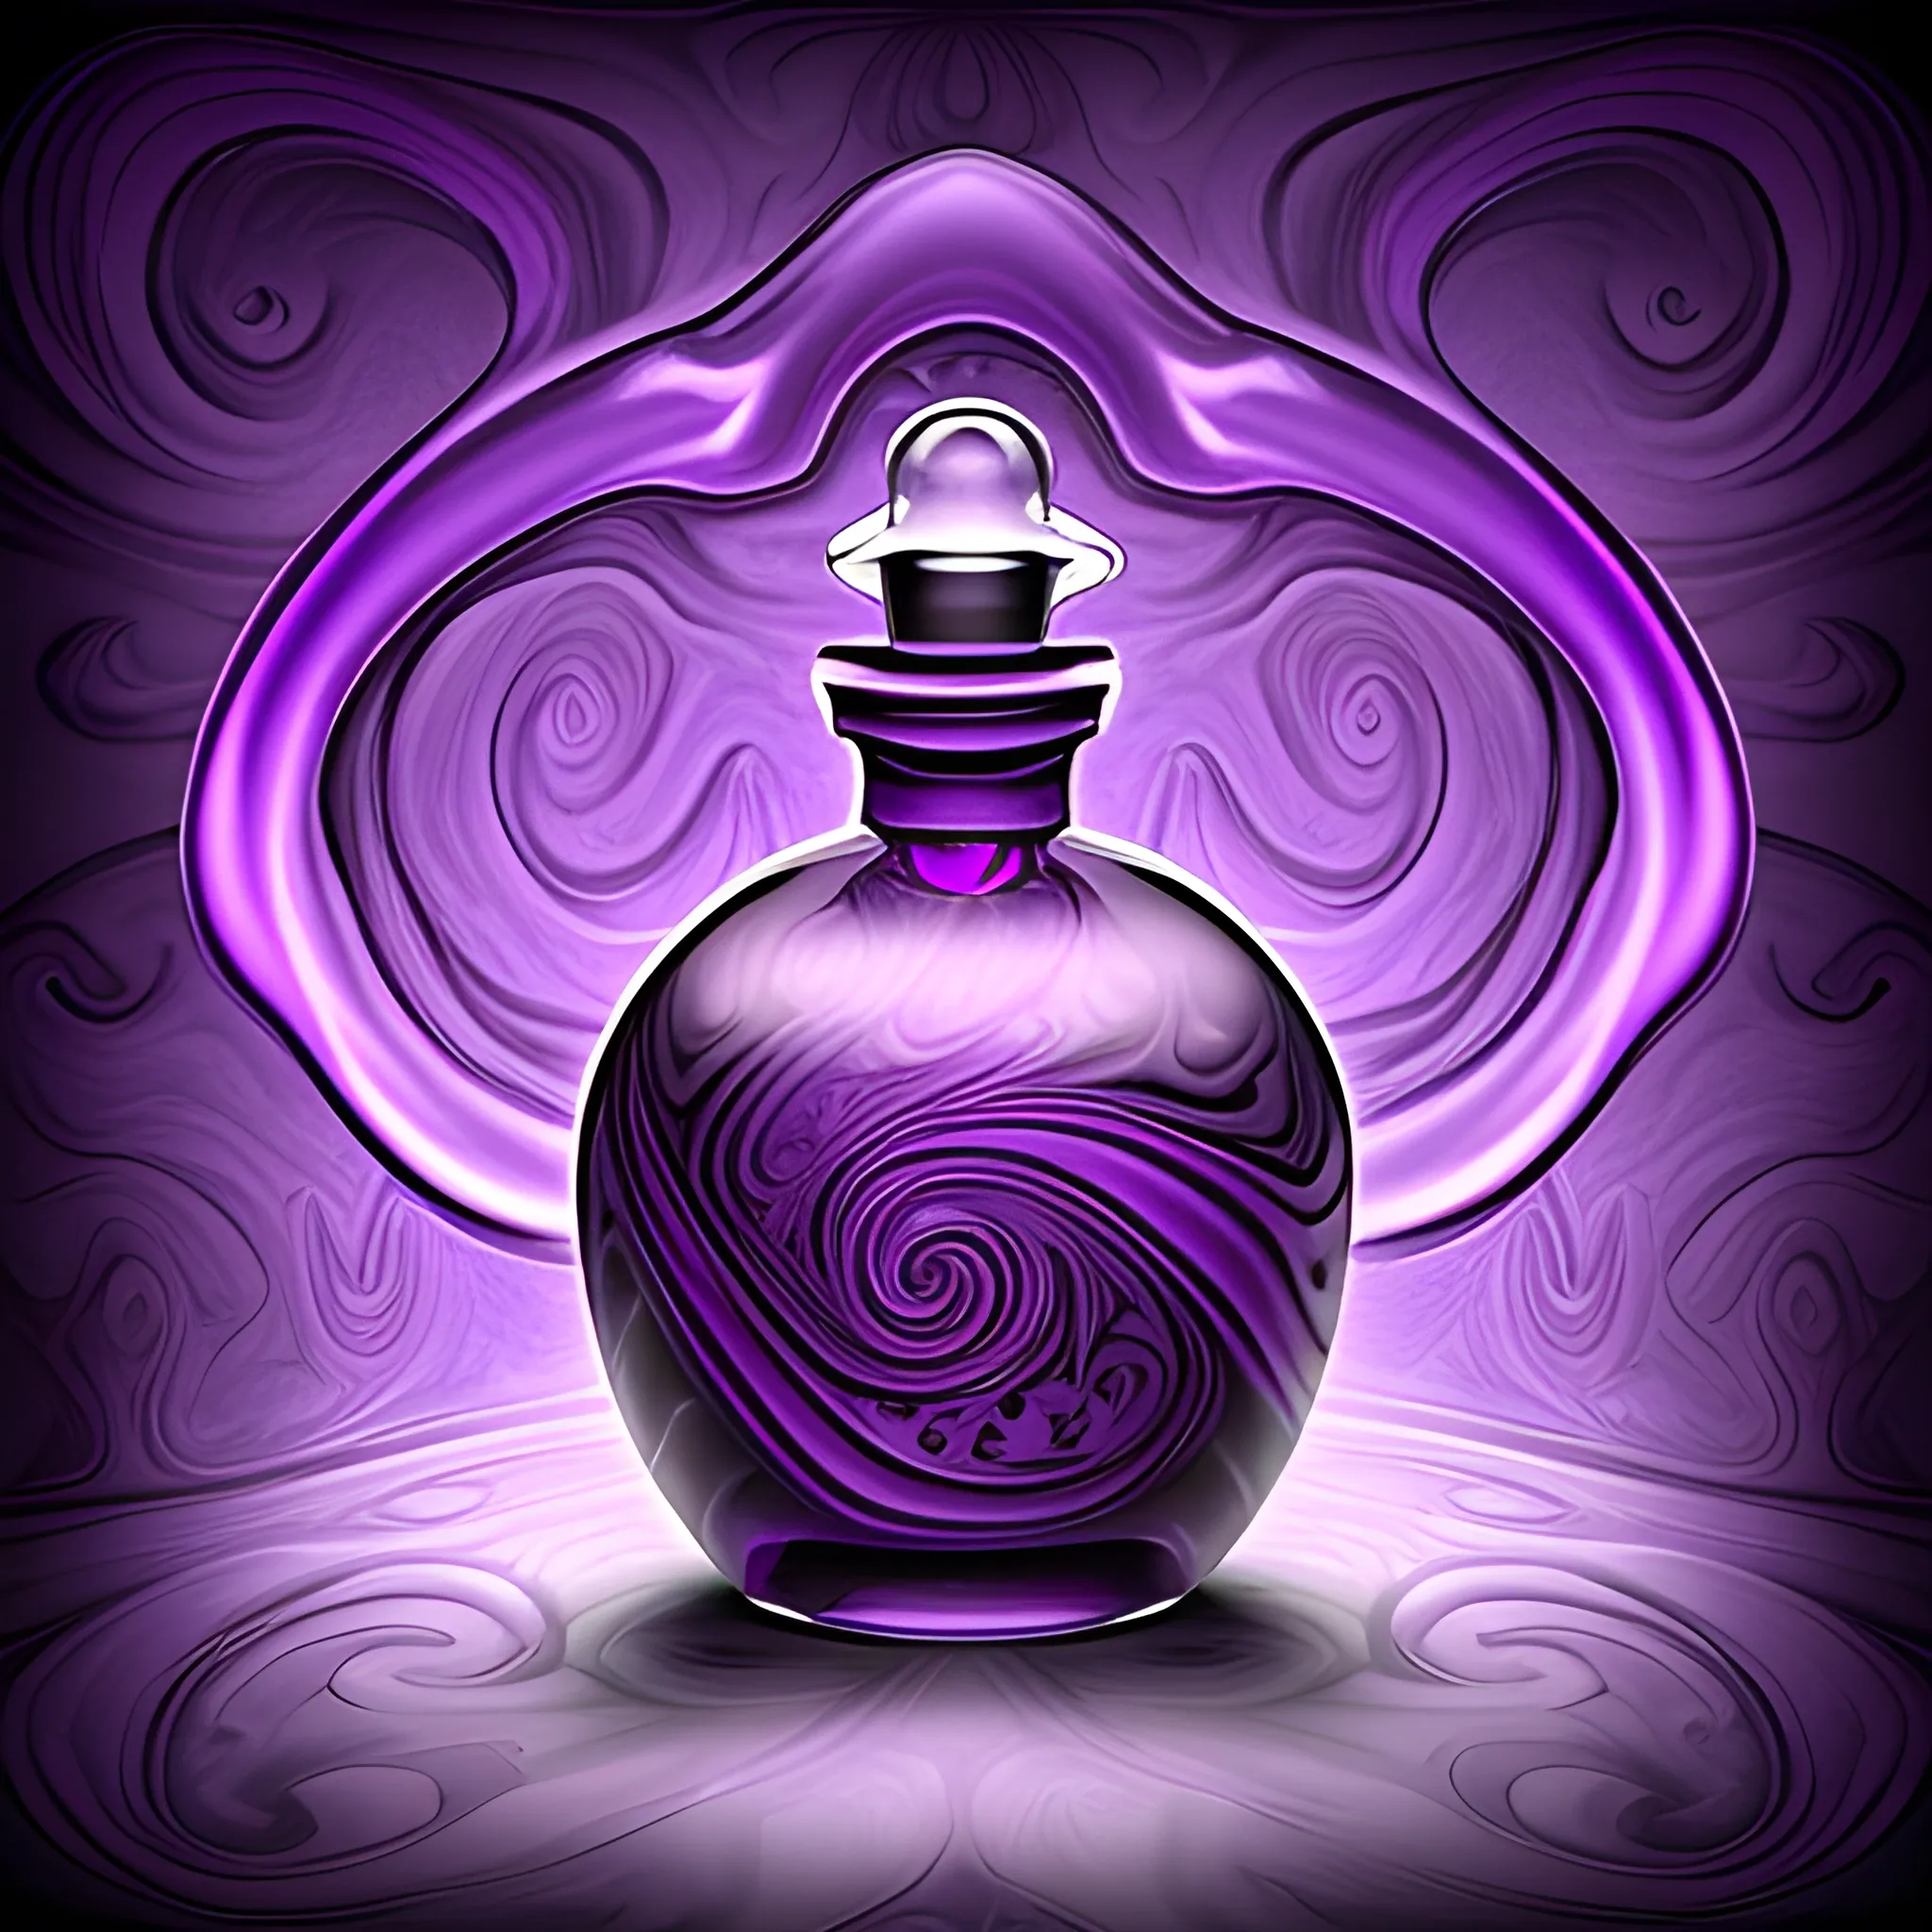 Potion bottle magic mysterious purple DnD mystery swirls MORE MYSTERIOUS purple swirl background

